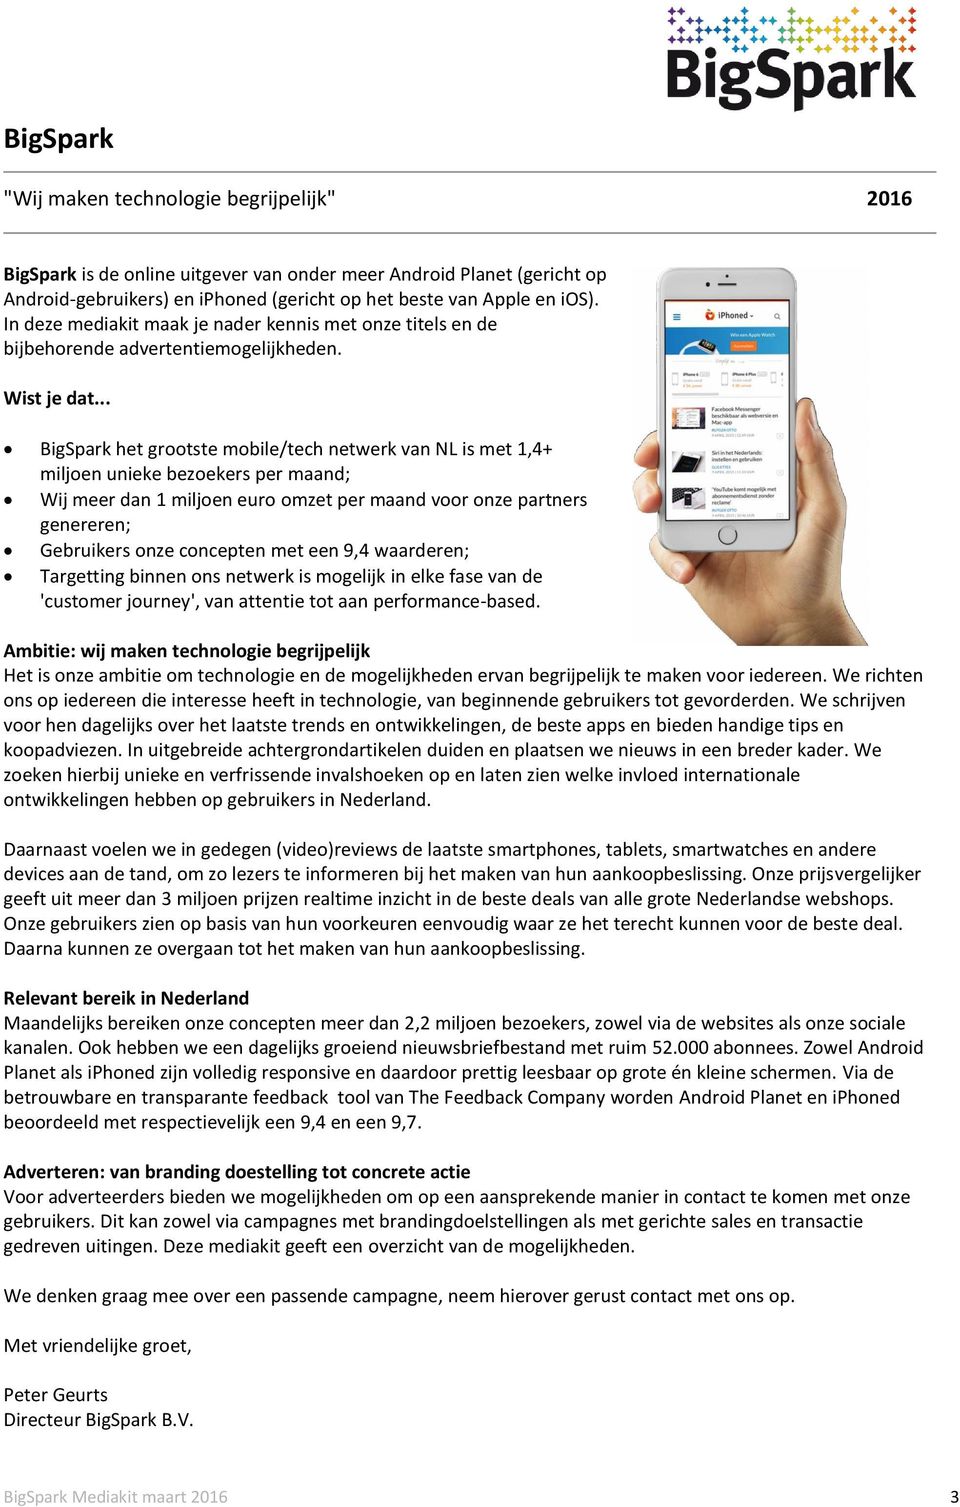 .. BigSpark het grootste mobile/tech netwerk van NL is met 1,4+ miljoen unieke bezoekers per maand; Wij meer dan 1 miljoen euro omzet per maand voor onze partners genereren; Gebruikers onze concepten